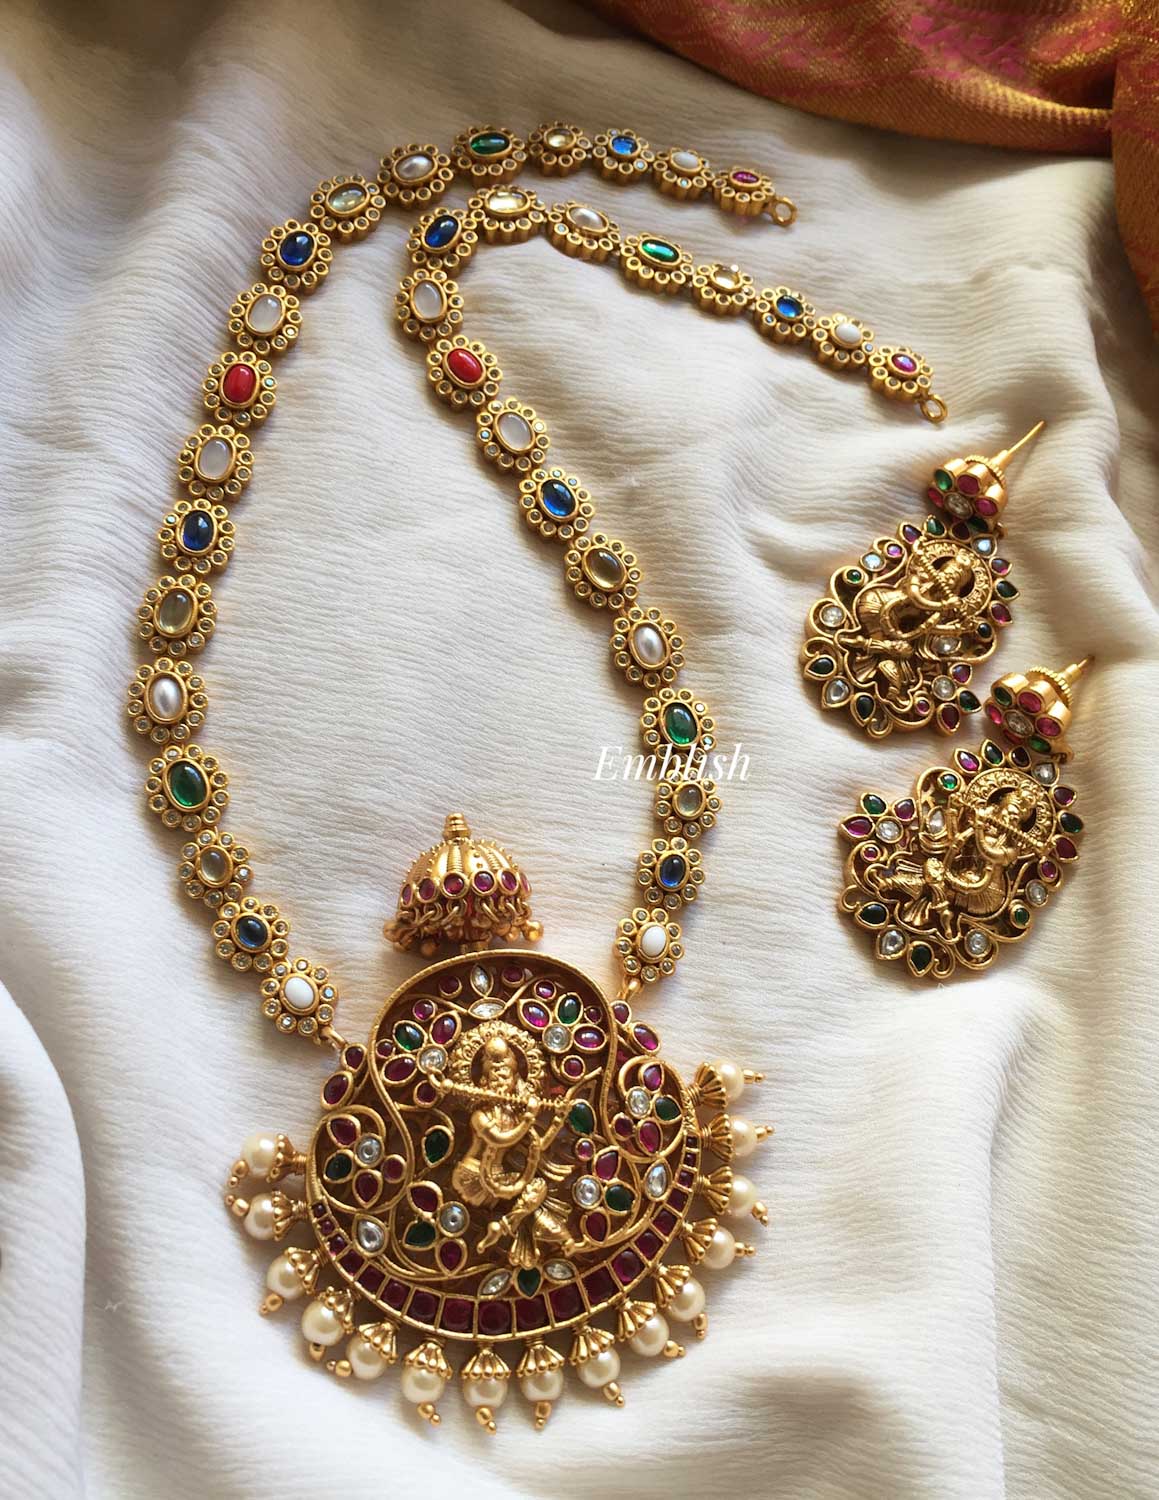 Navrathna Krishna kemp pendant neckpiece 